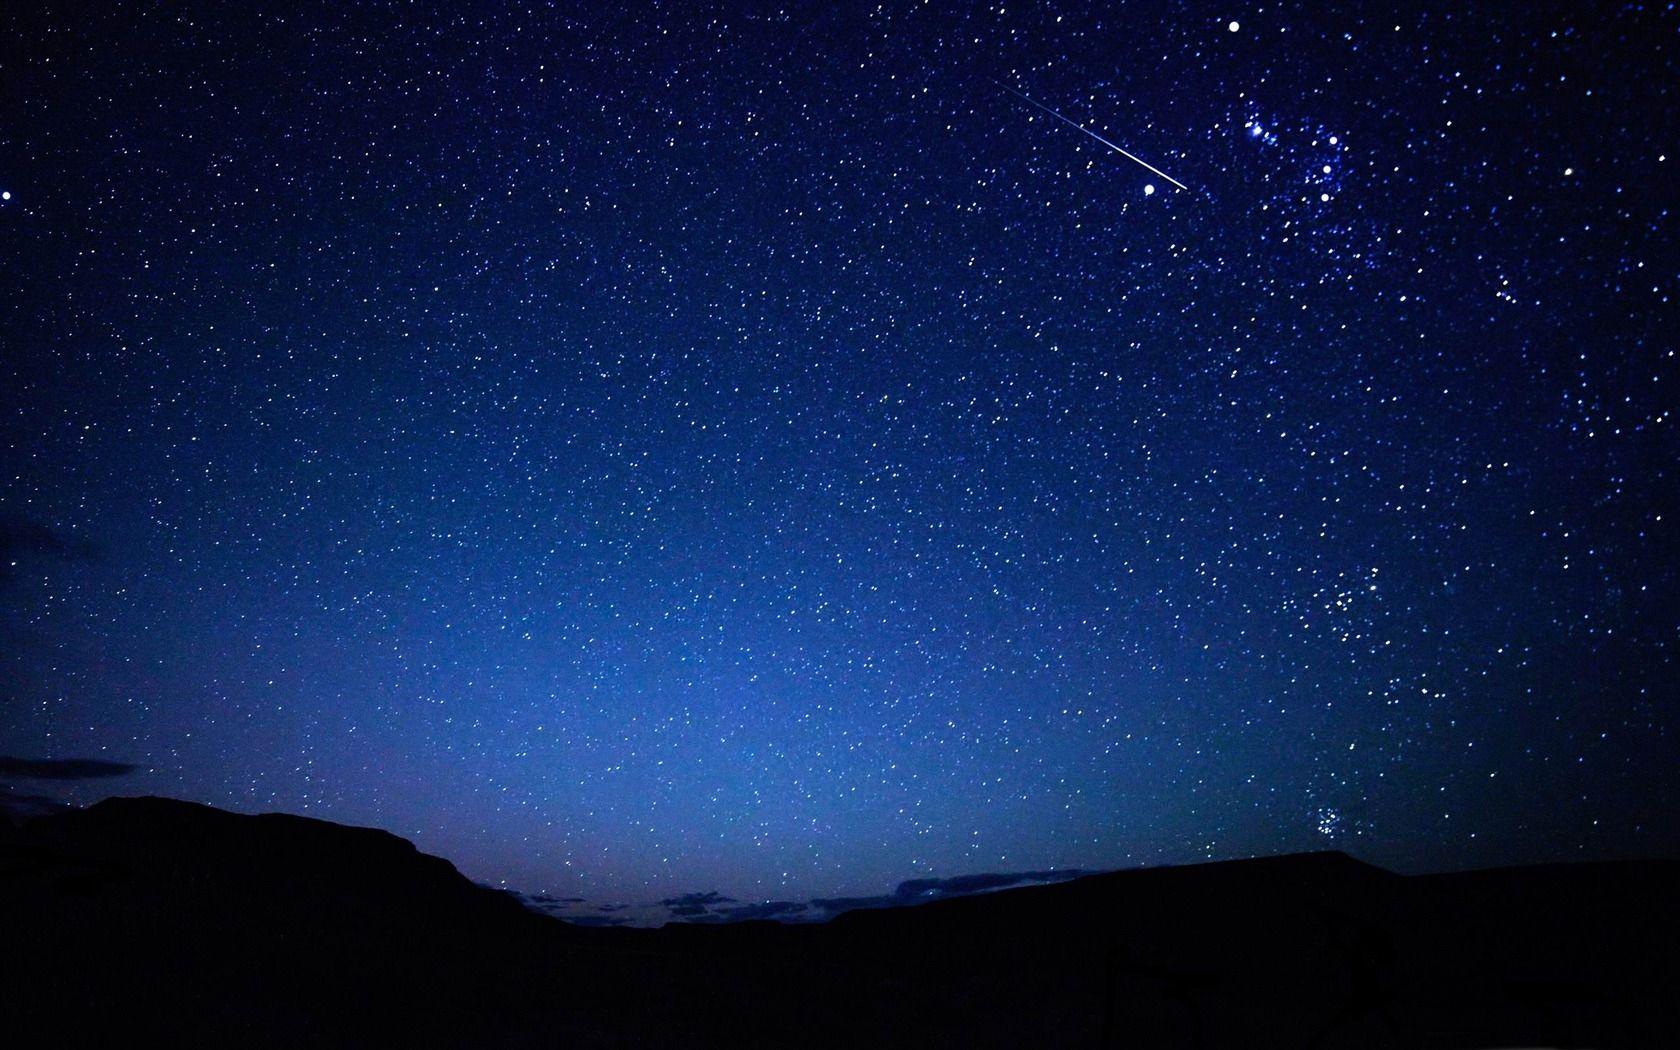 Thưởng thức hình nền đêm sao là cách tuyệt vời để tạo ra sự thư giãn và yên bình trong căn phòng của bạn. Bức ảnh liên quan sẽ mang đến cho bạn một không gian cây đồng và đầy sao trên bầu trời đầy bí ẩn.